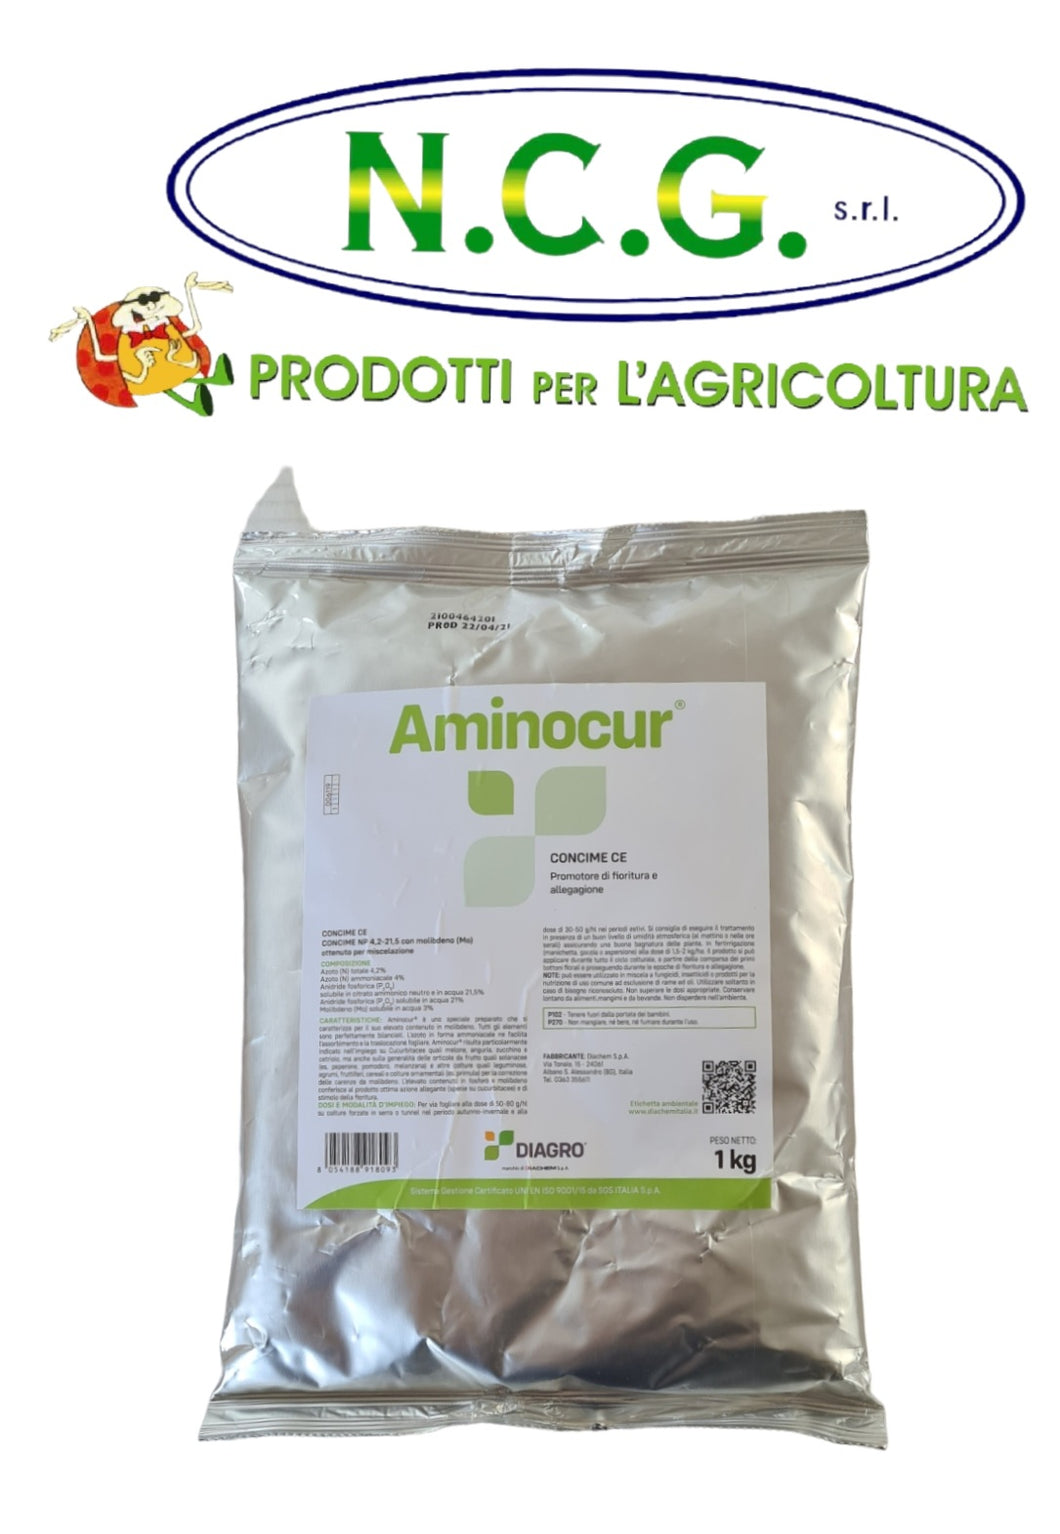 Aminocur Diagro da kg 1 promotore di fioritura e allegagione concime CE da kg1